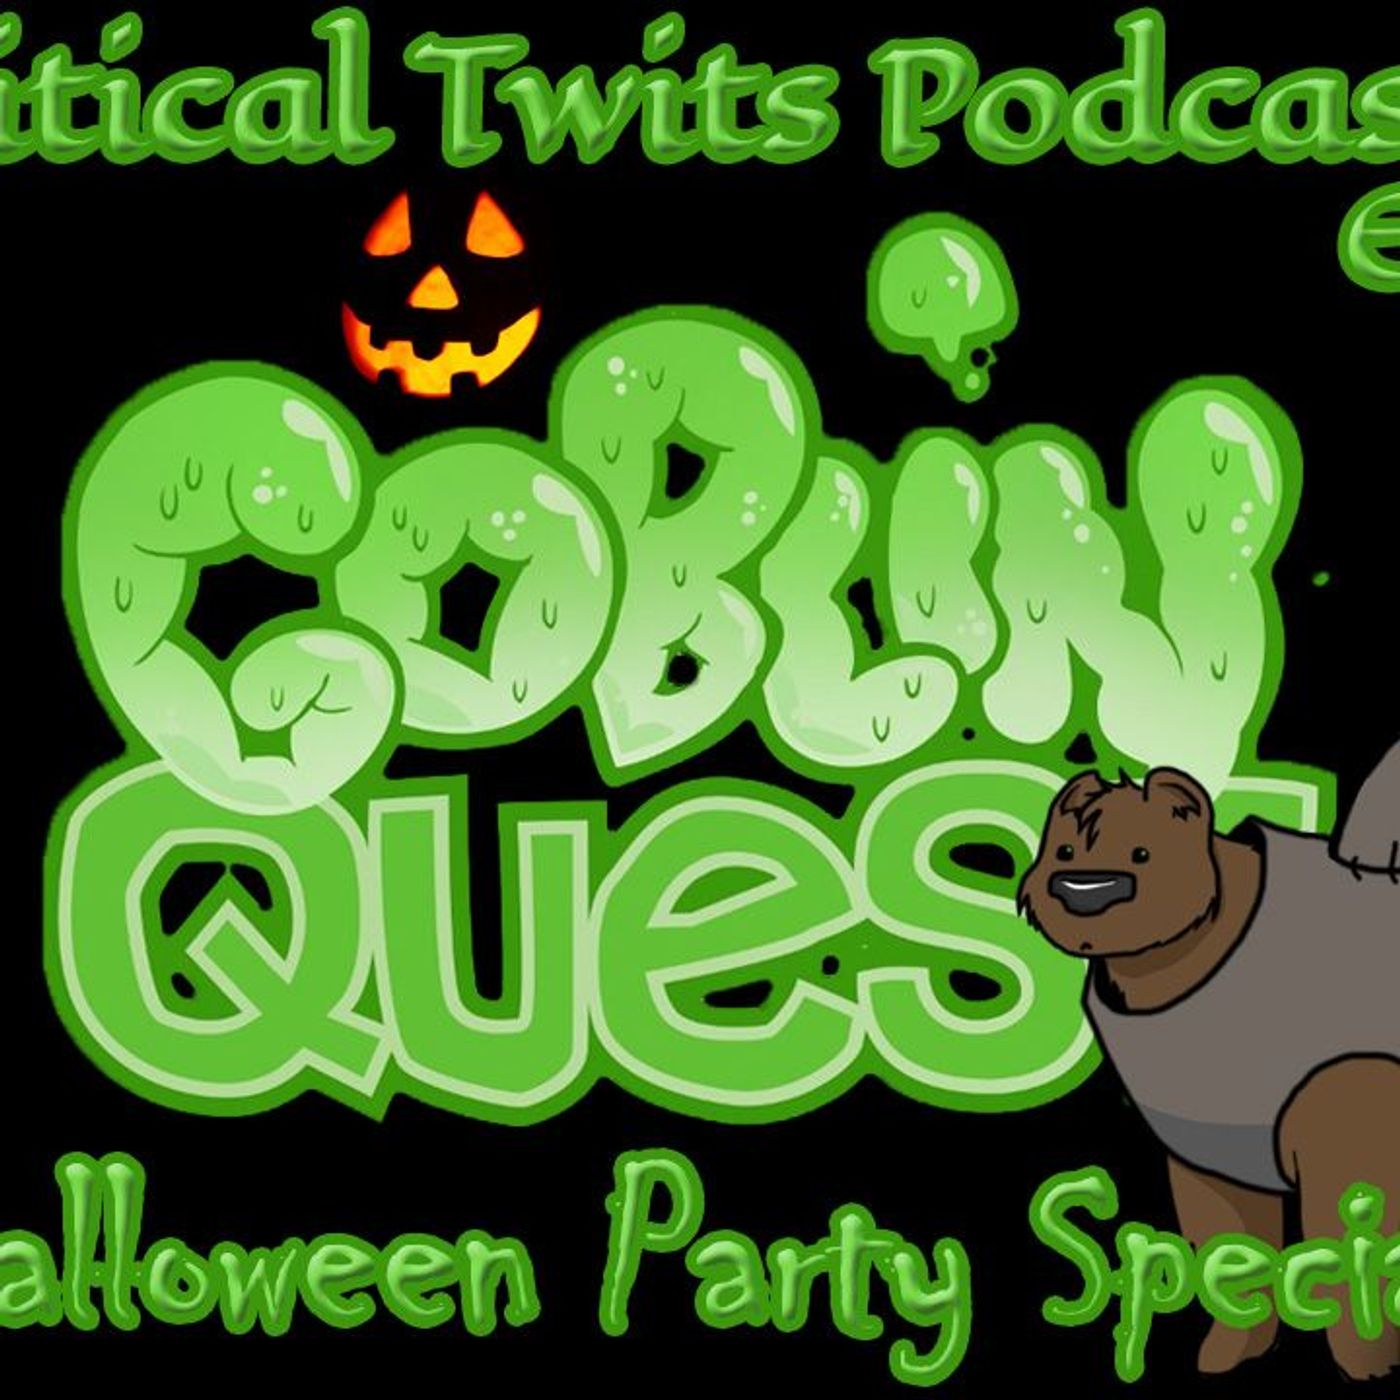 51 - Goblin Quest Halloween Special